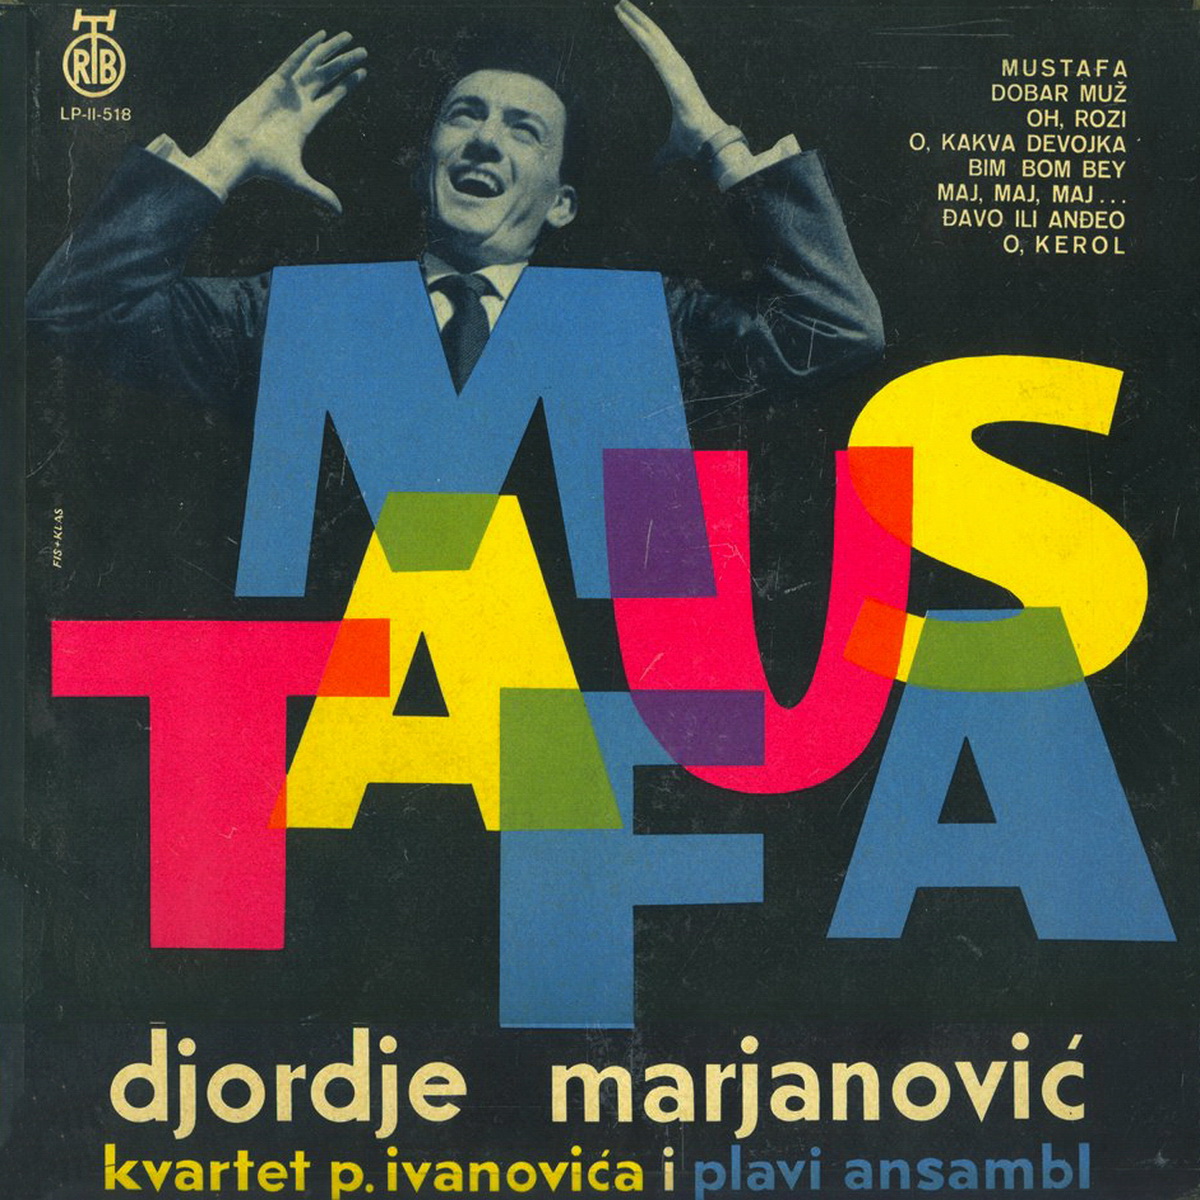 Djordje Marjanovic 1961 Mustafa a